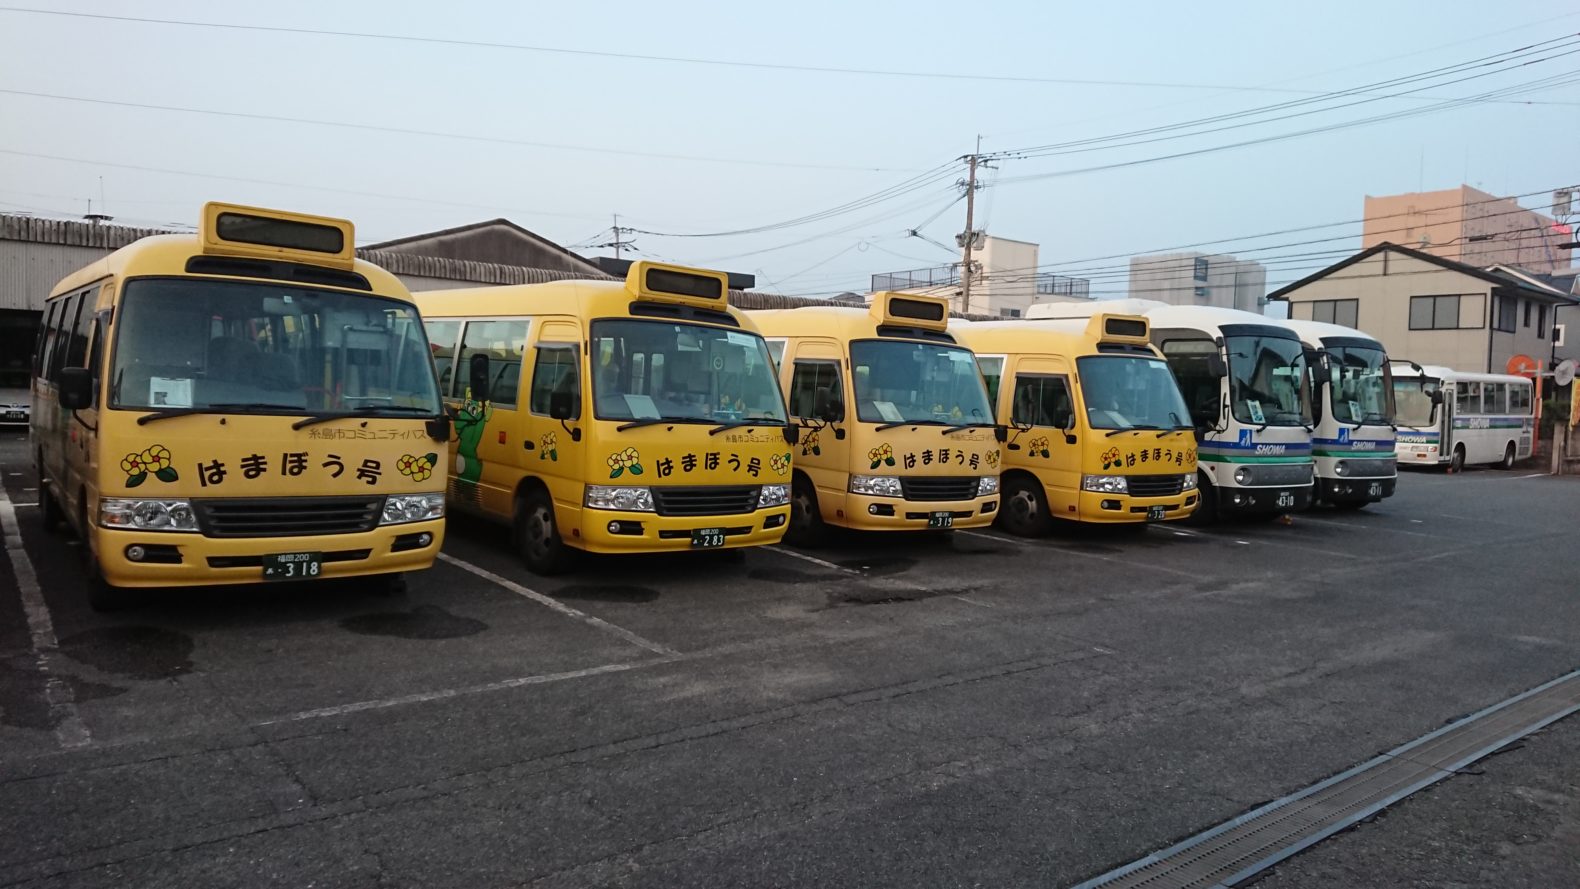 糸島市コミュニティバス はまぼう号 糸島のおでかけスポットを紹介するよ